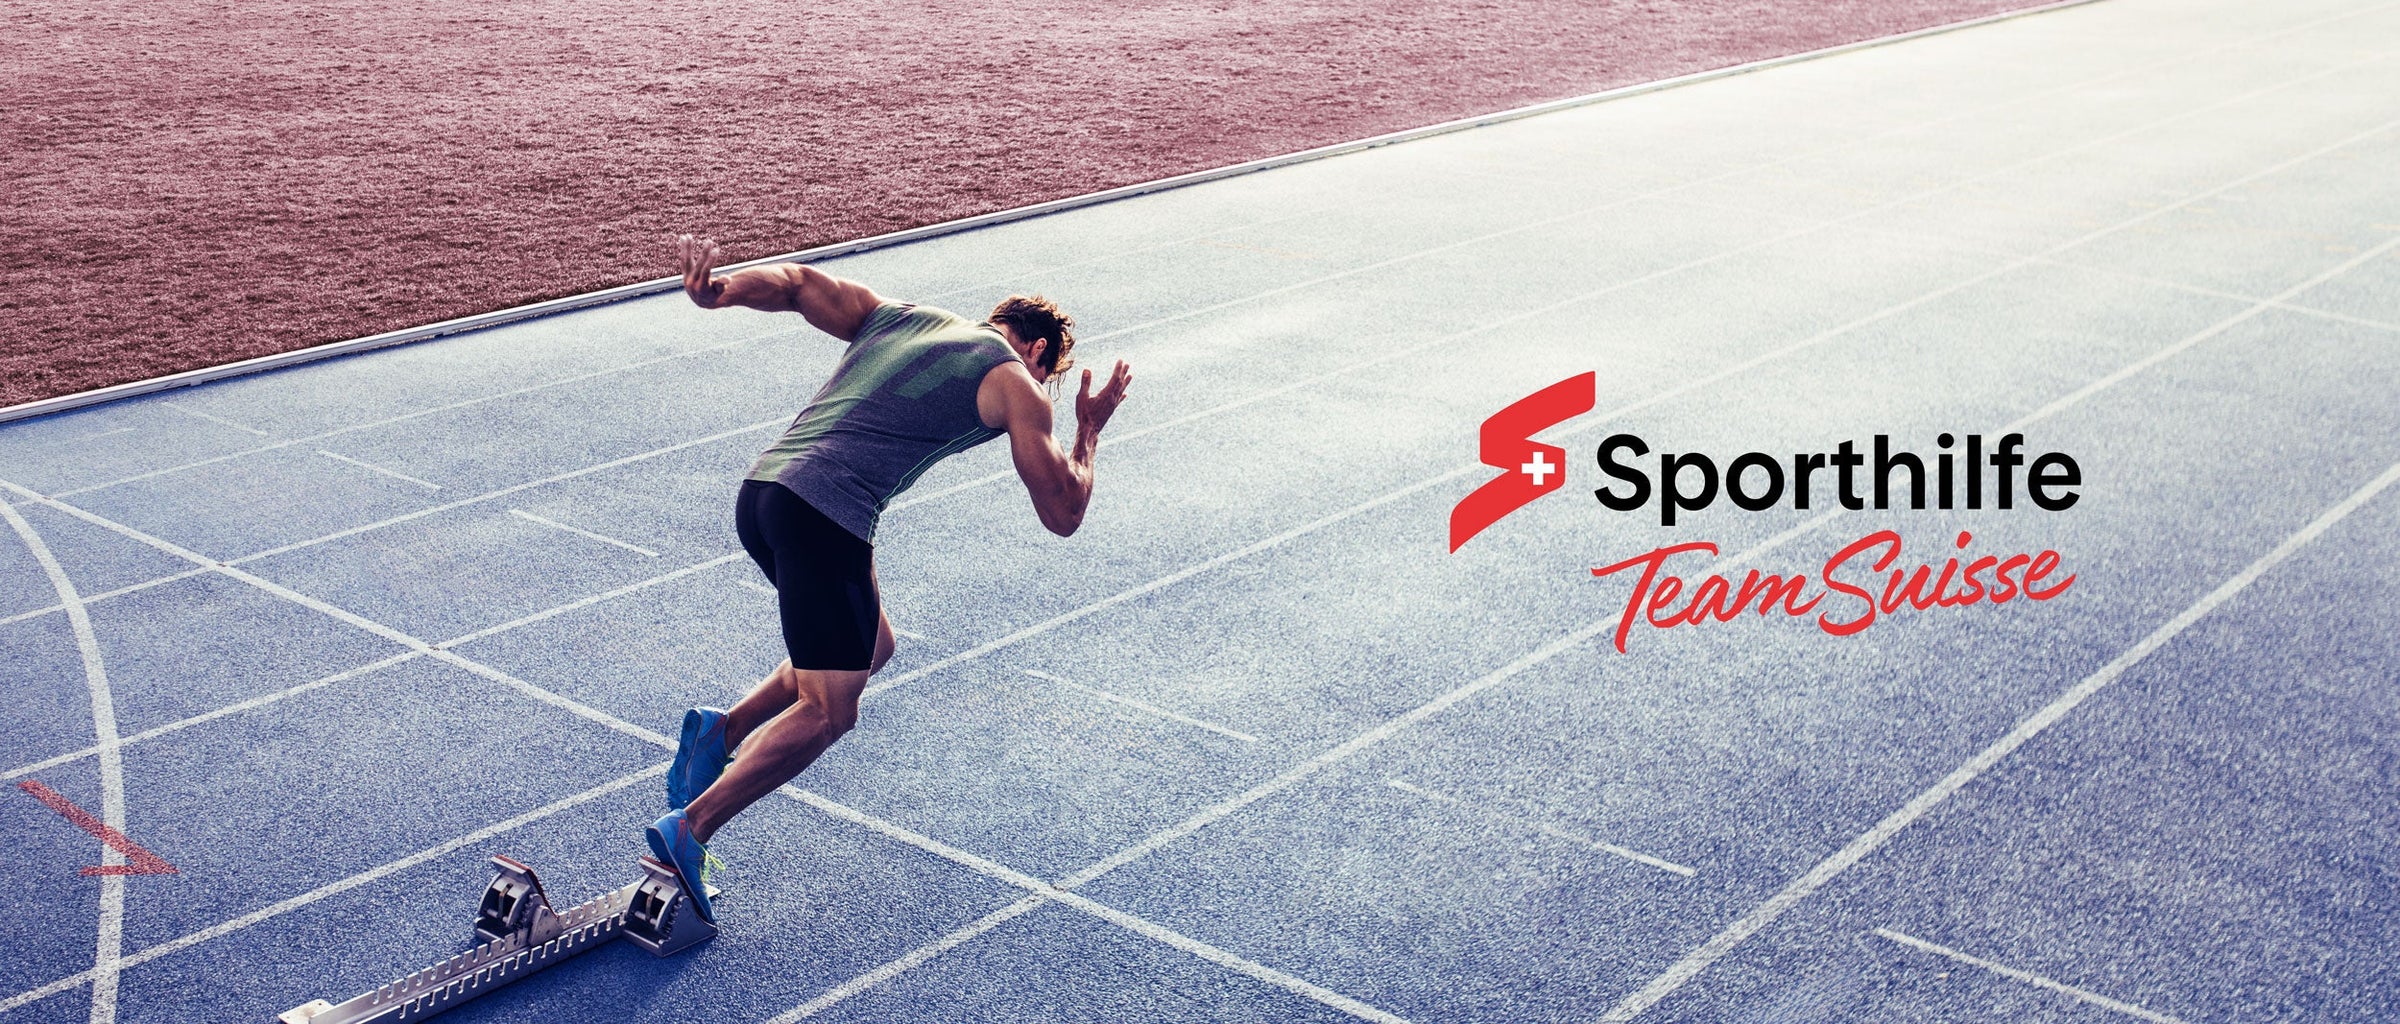 Sporthilfe Schweiz - Mann beim Sprint